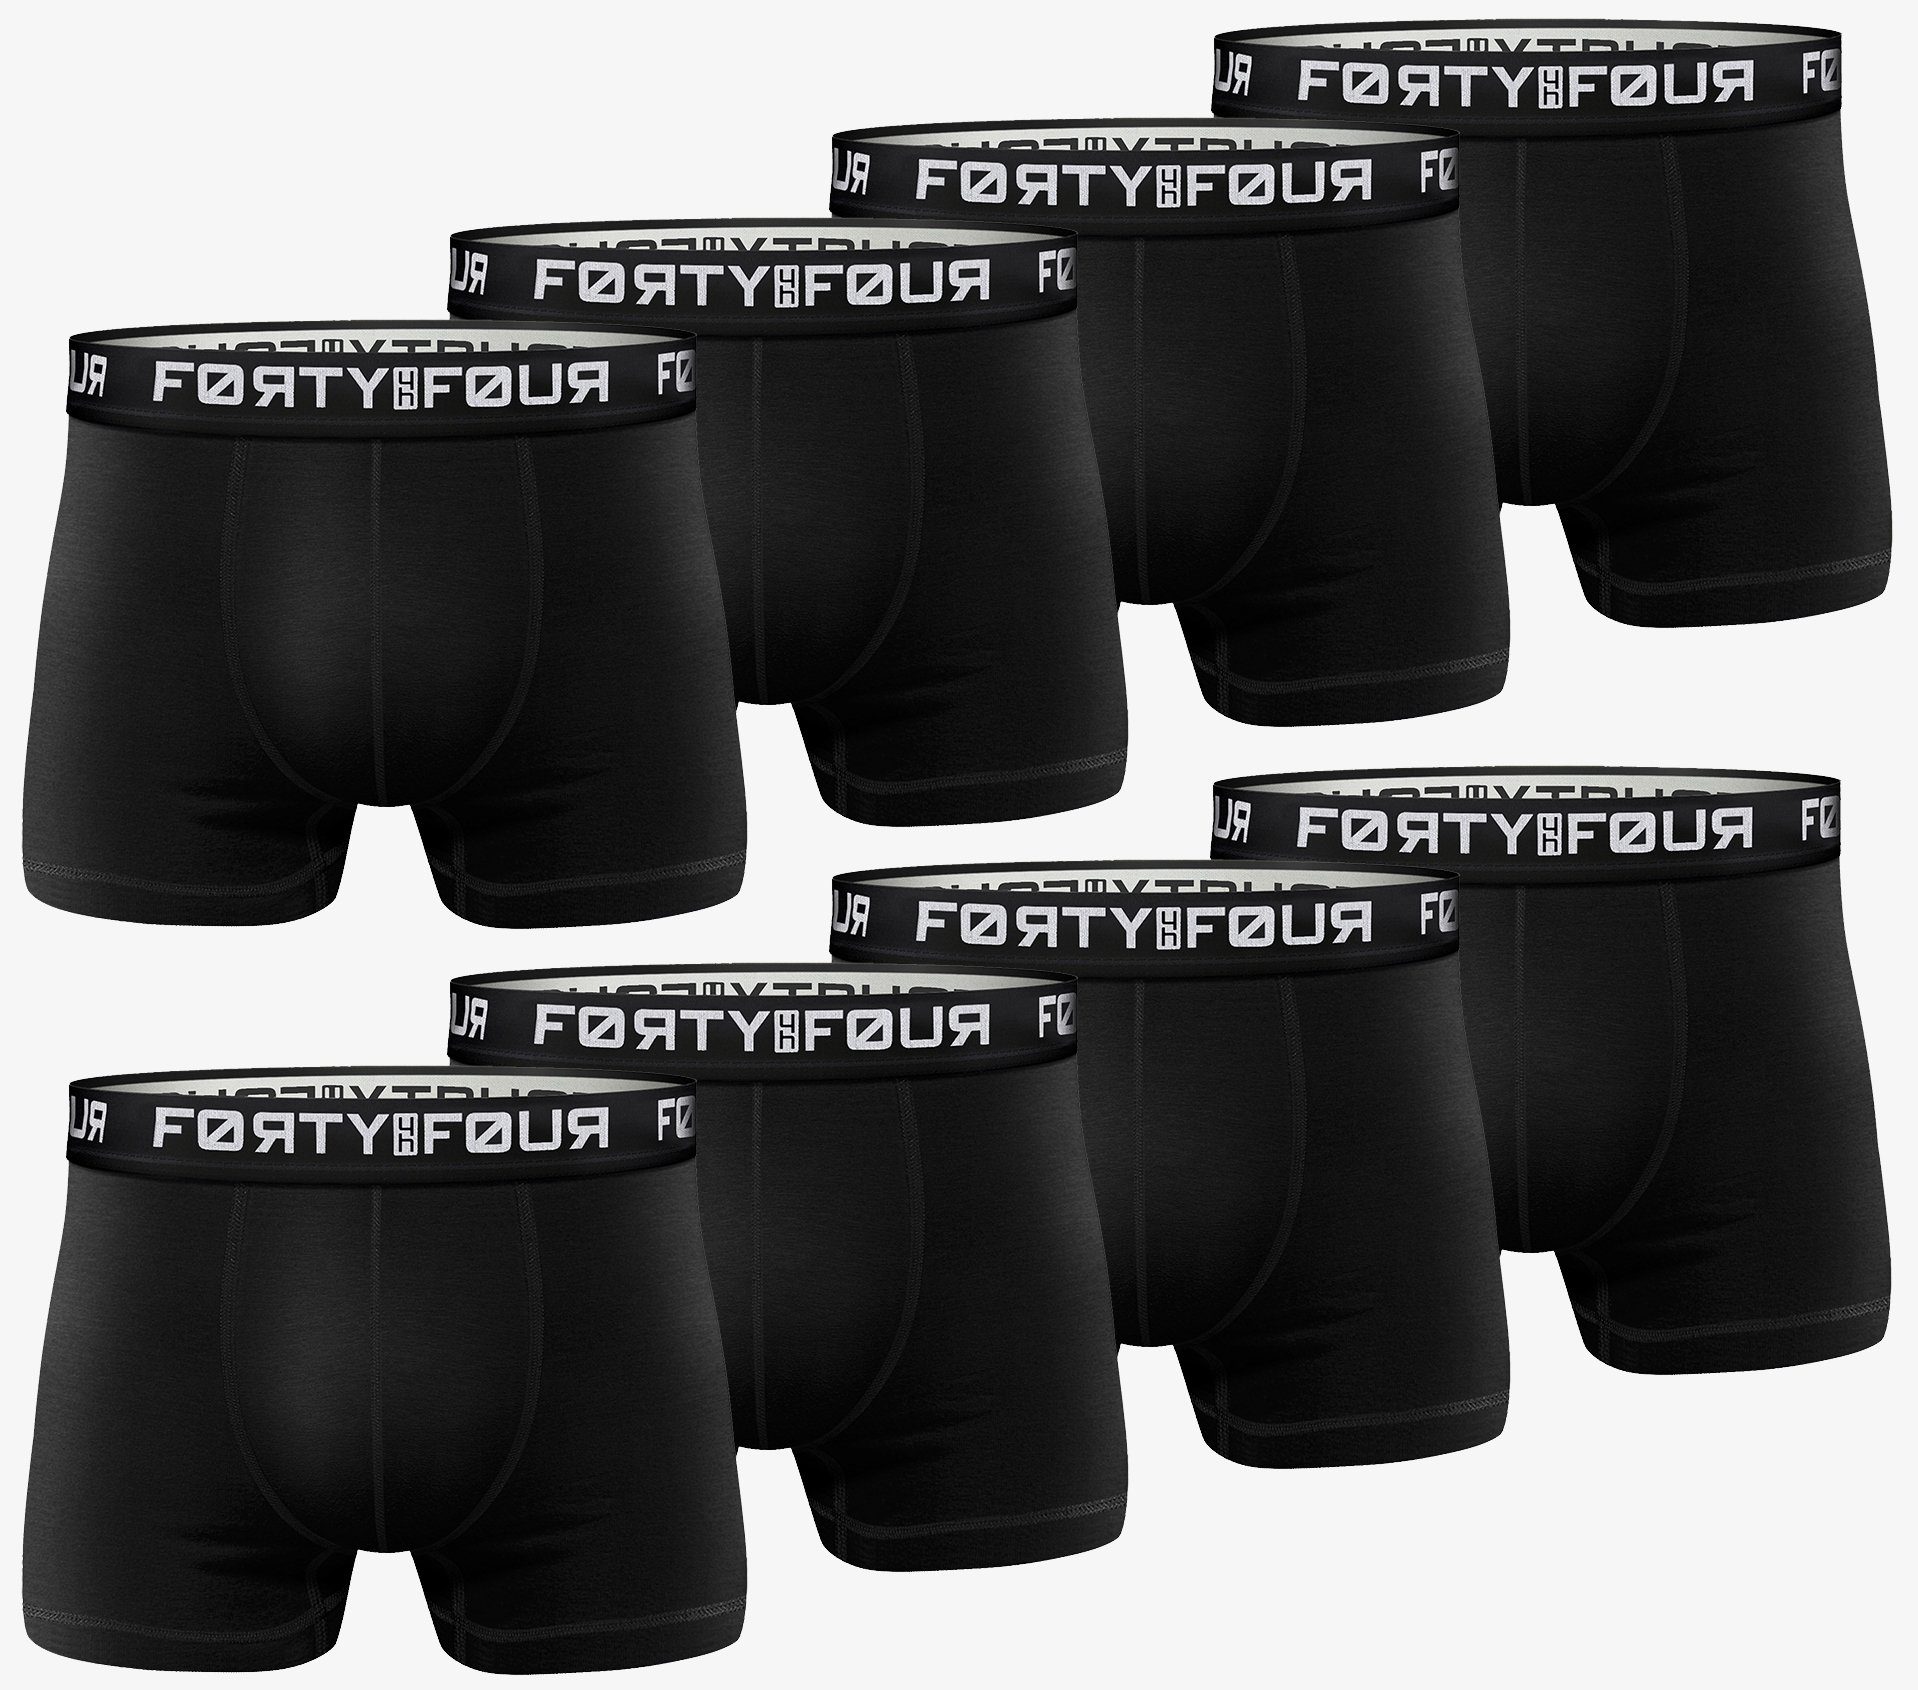 FortyFour Boxershorts Herren Männer Unterhosen Baumwolle Premium Qualität perfekte Passform (Vorteilspack, 8er Pack) S - 7XL 717b-schwarz